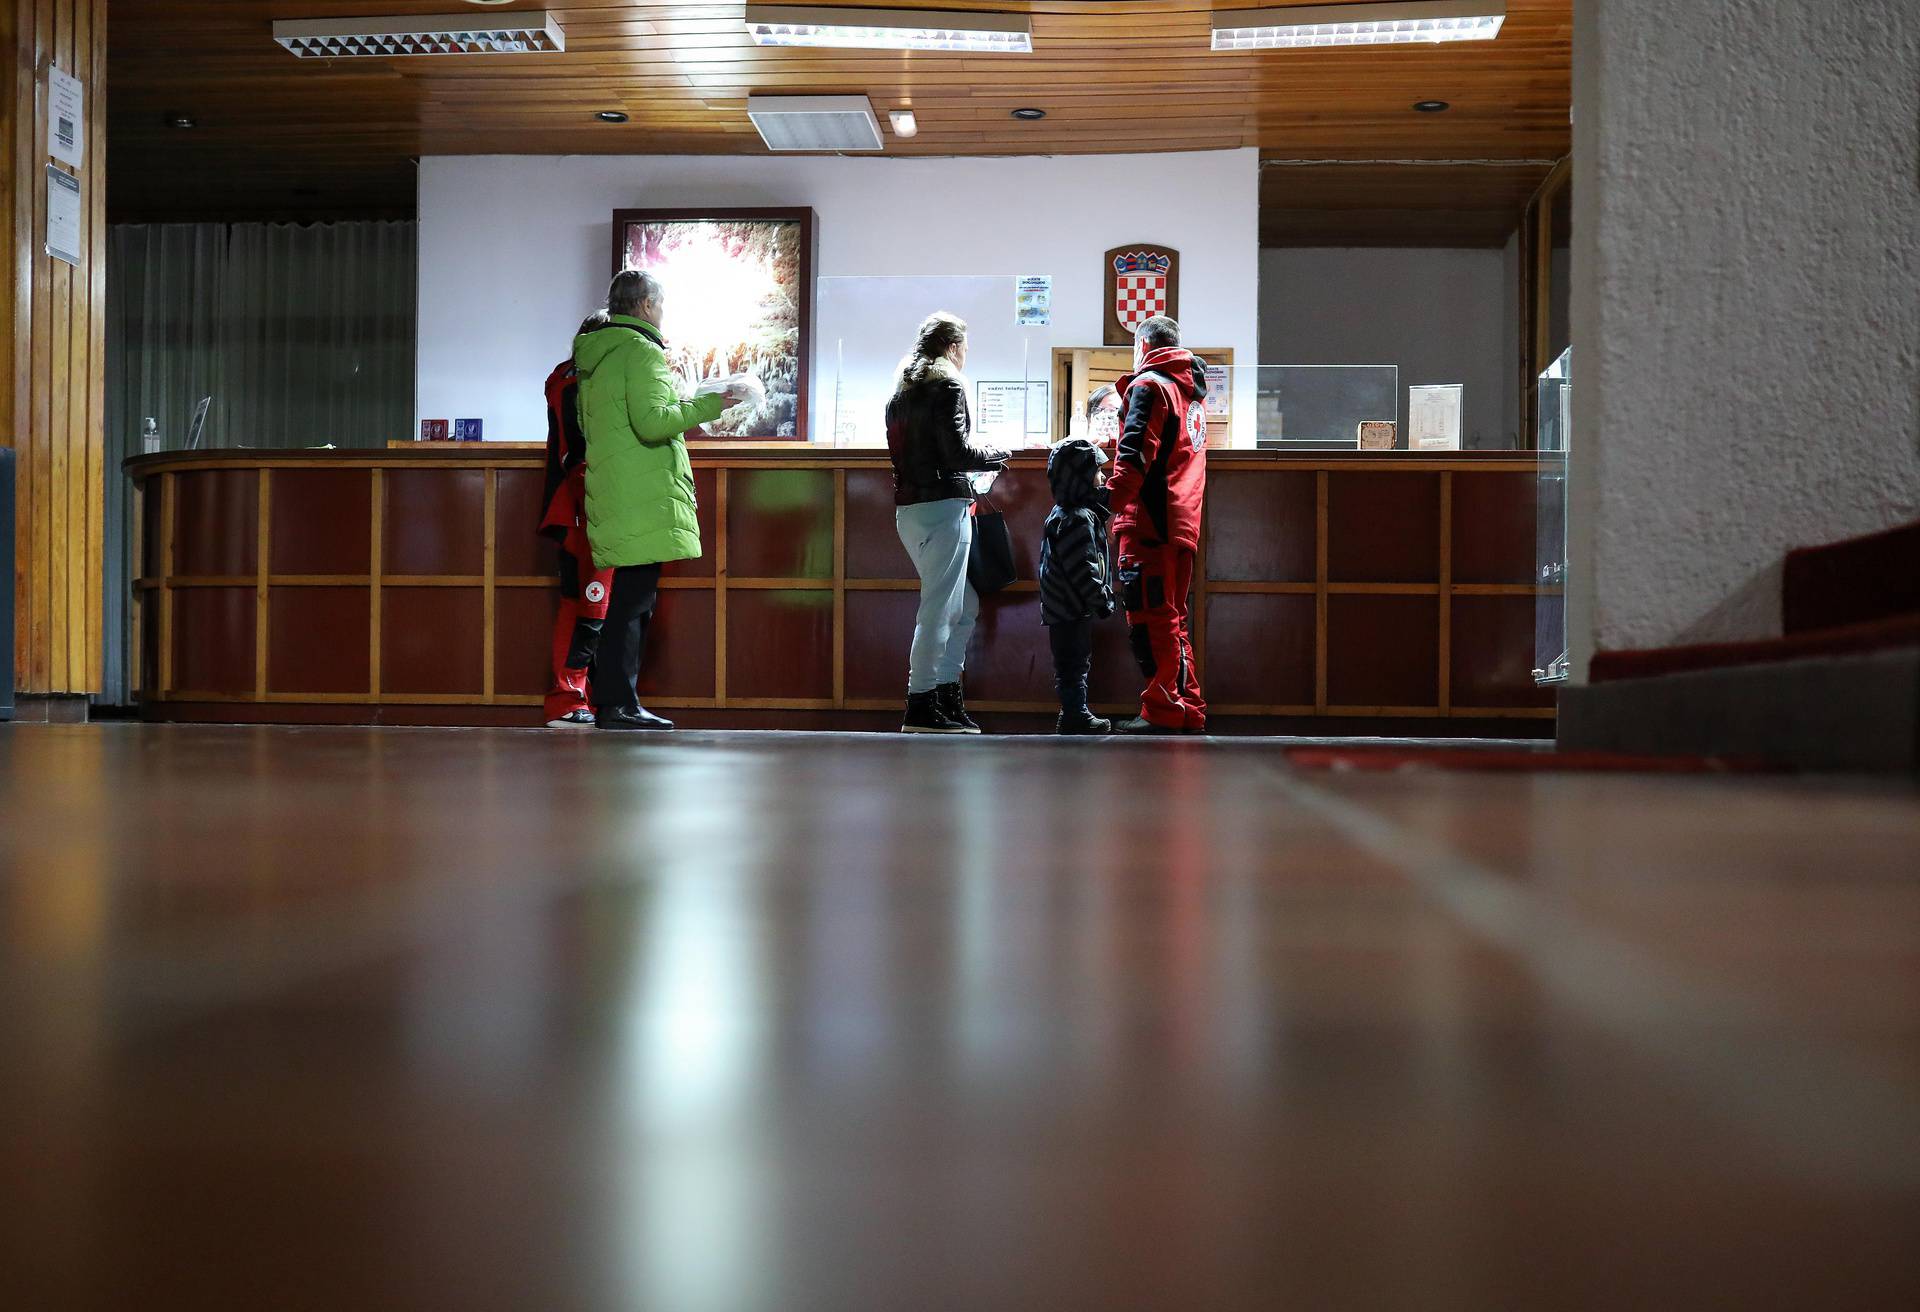 Prve izbjeglice iz Ukrajine već stigle u Hrvatsku, u Motel Plitvice na zagrebačkoj obilaznici